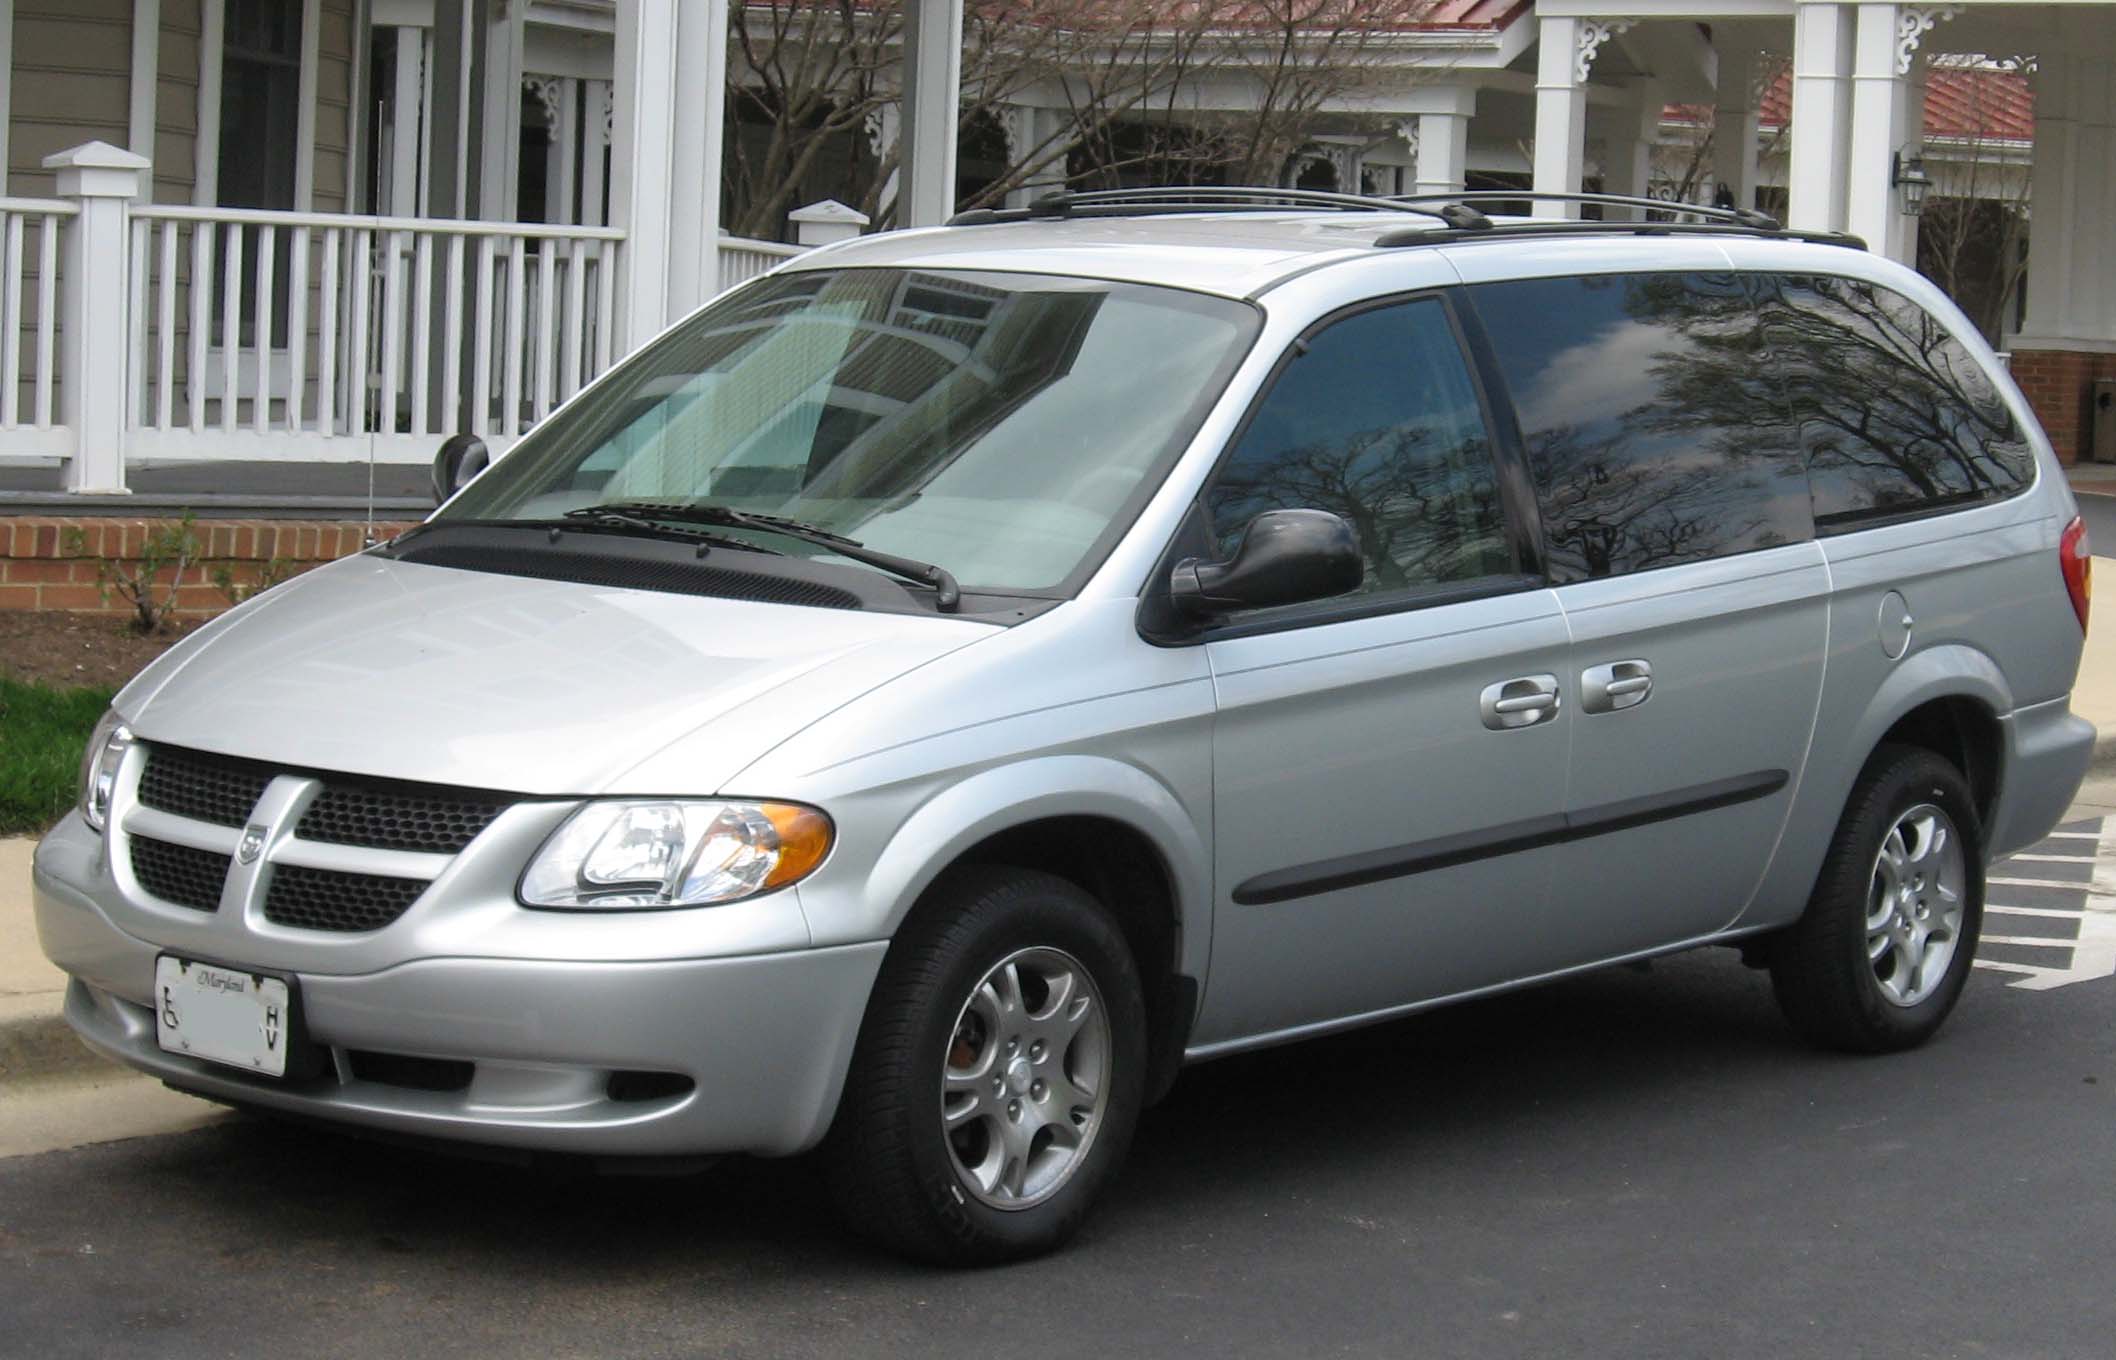 File:2001-2004 Dodge Grand Caravan.jpg